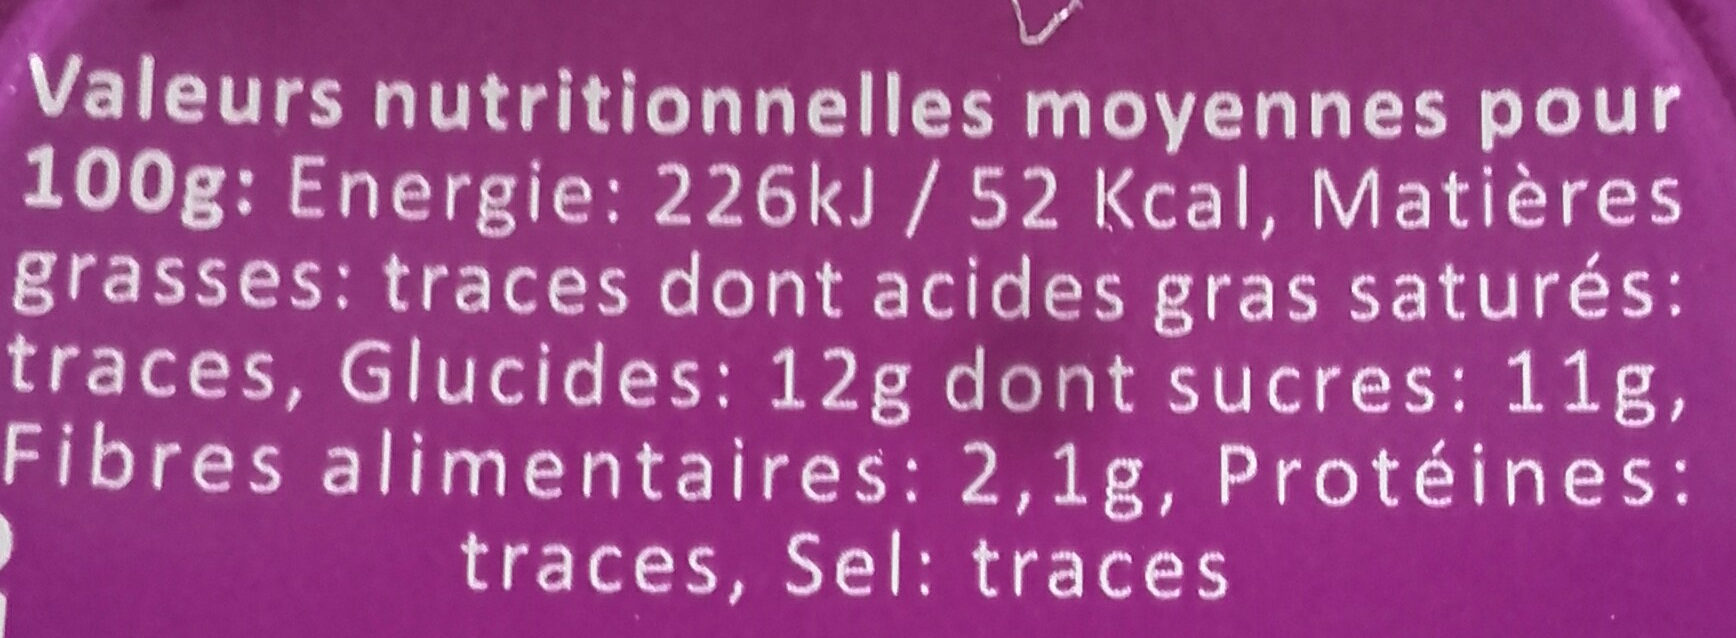 purée de pommes - Nutrition facts - fr